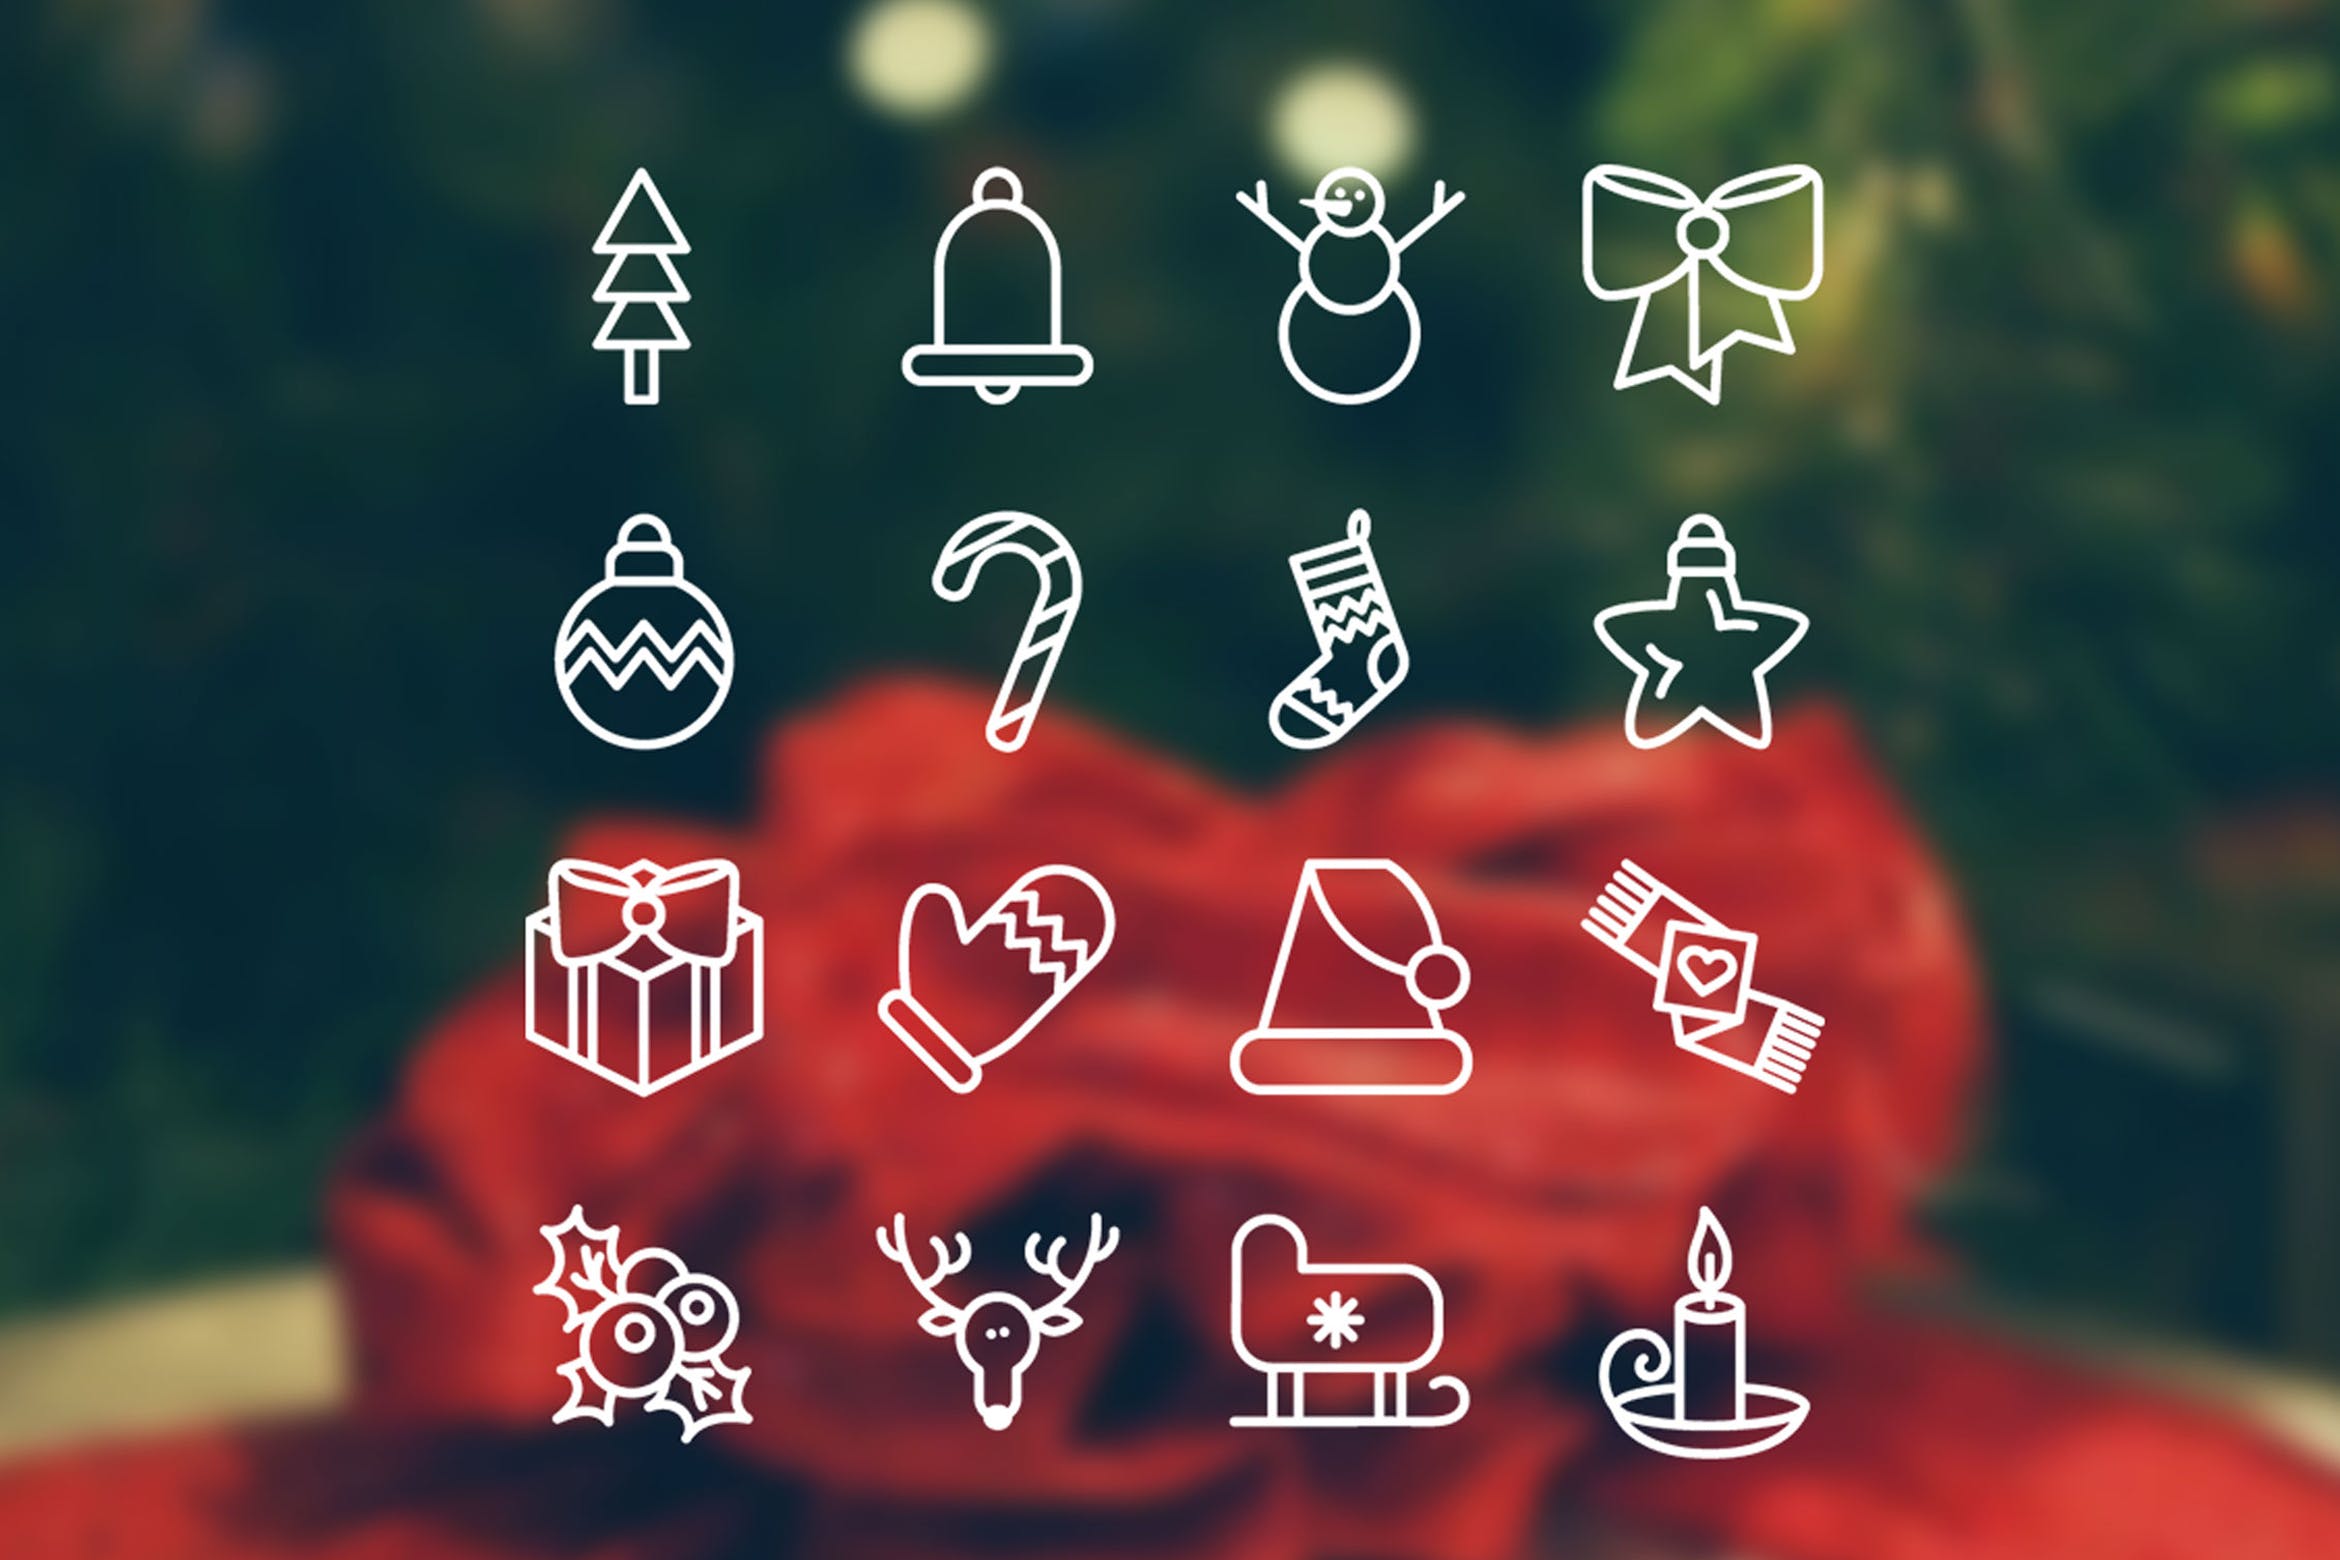 16枚圣诞节节日主题矢量图标素材 Christmas 16 Icons Set插图